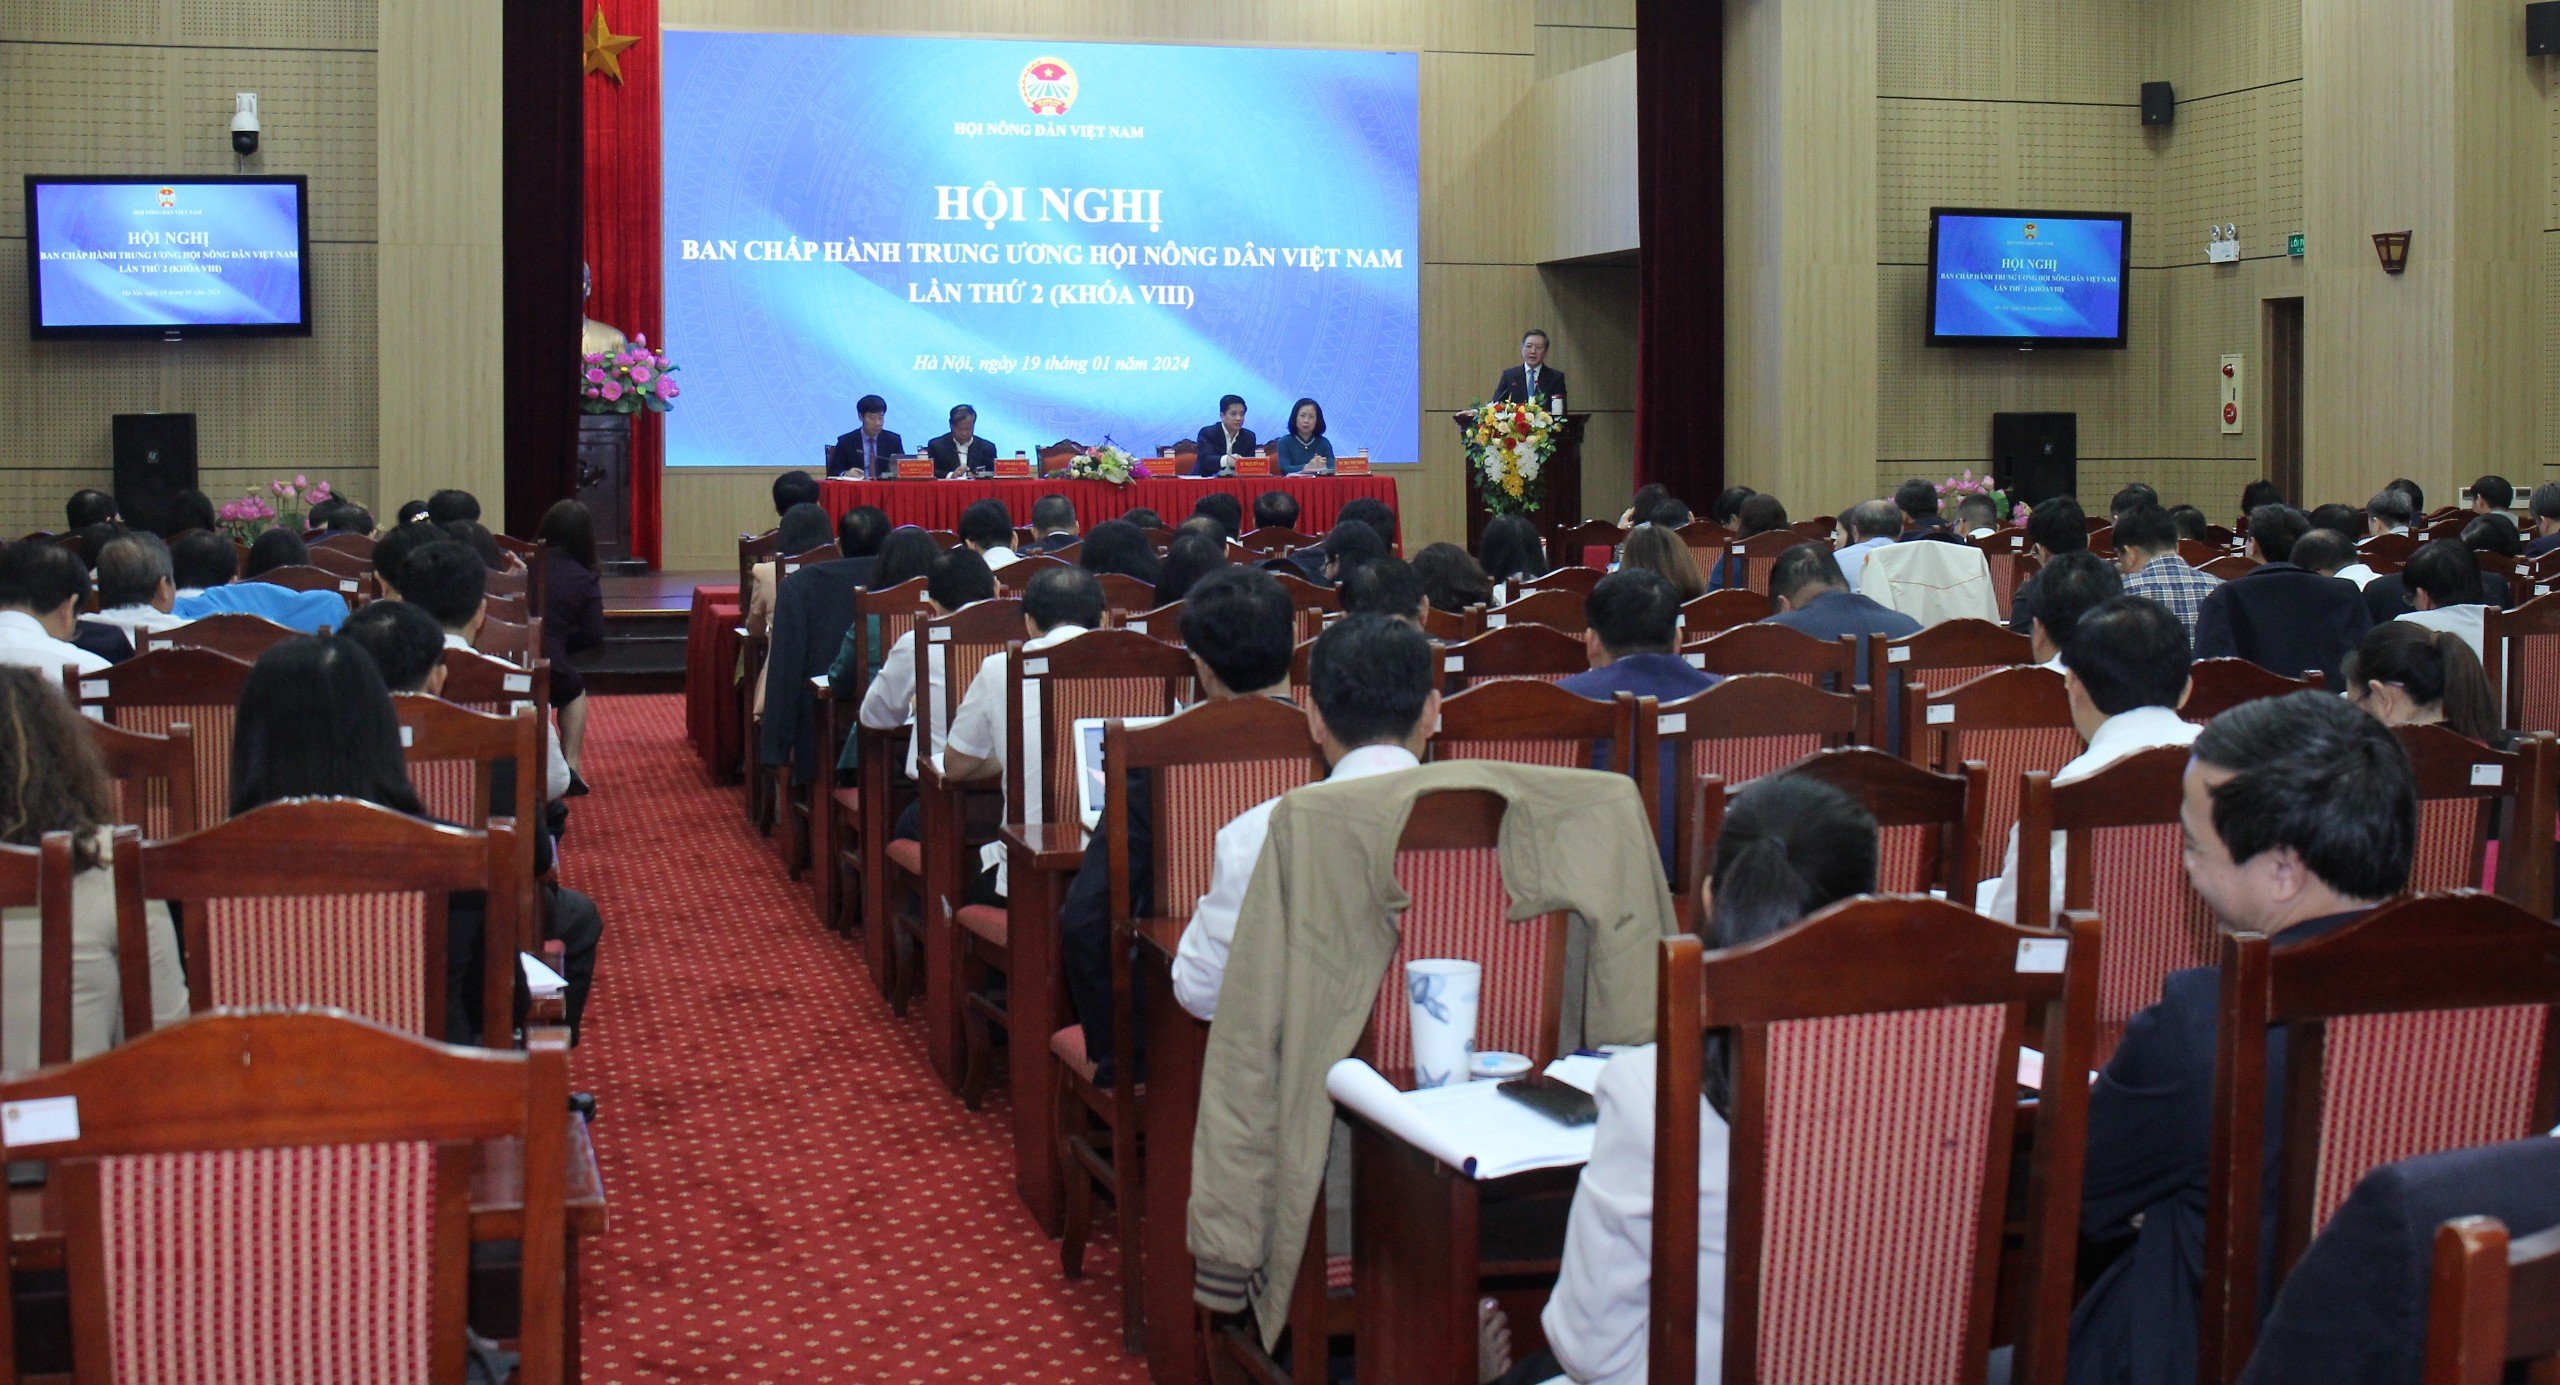 Hội nghị BCH Trung ương Hội Nông dân Việt Nam lần thứ 2 (khóa VIII): Triển khai ngay 17 chỉ tiêu Đại hội- Ảnh 1.